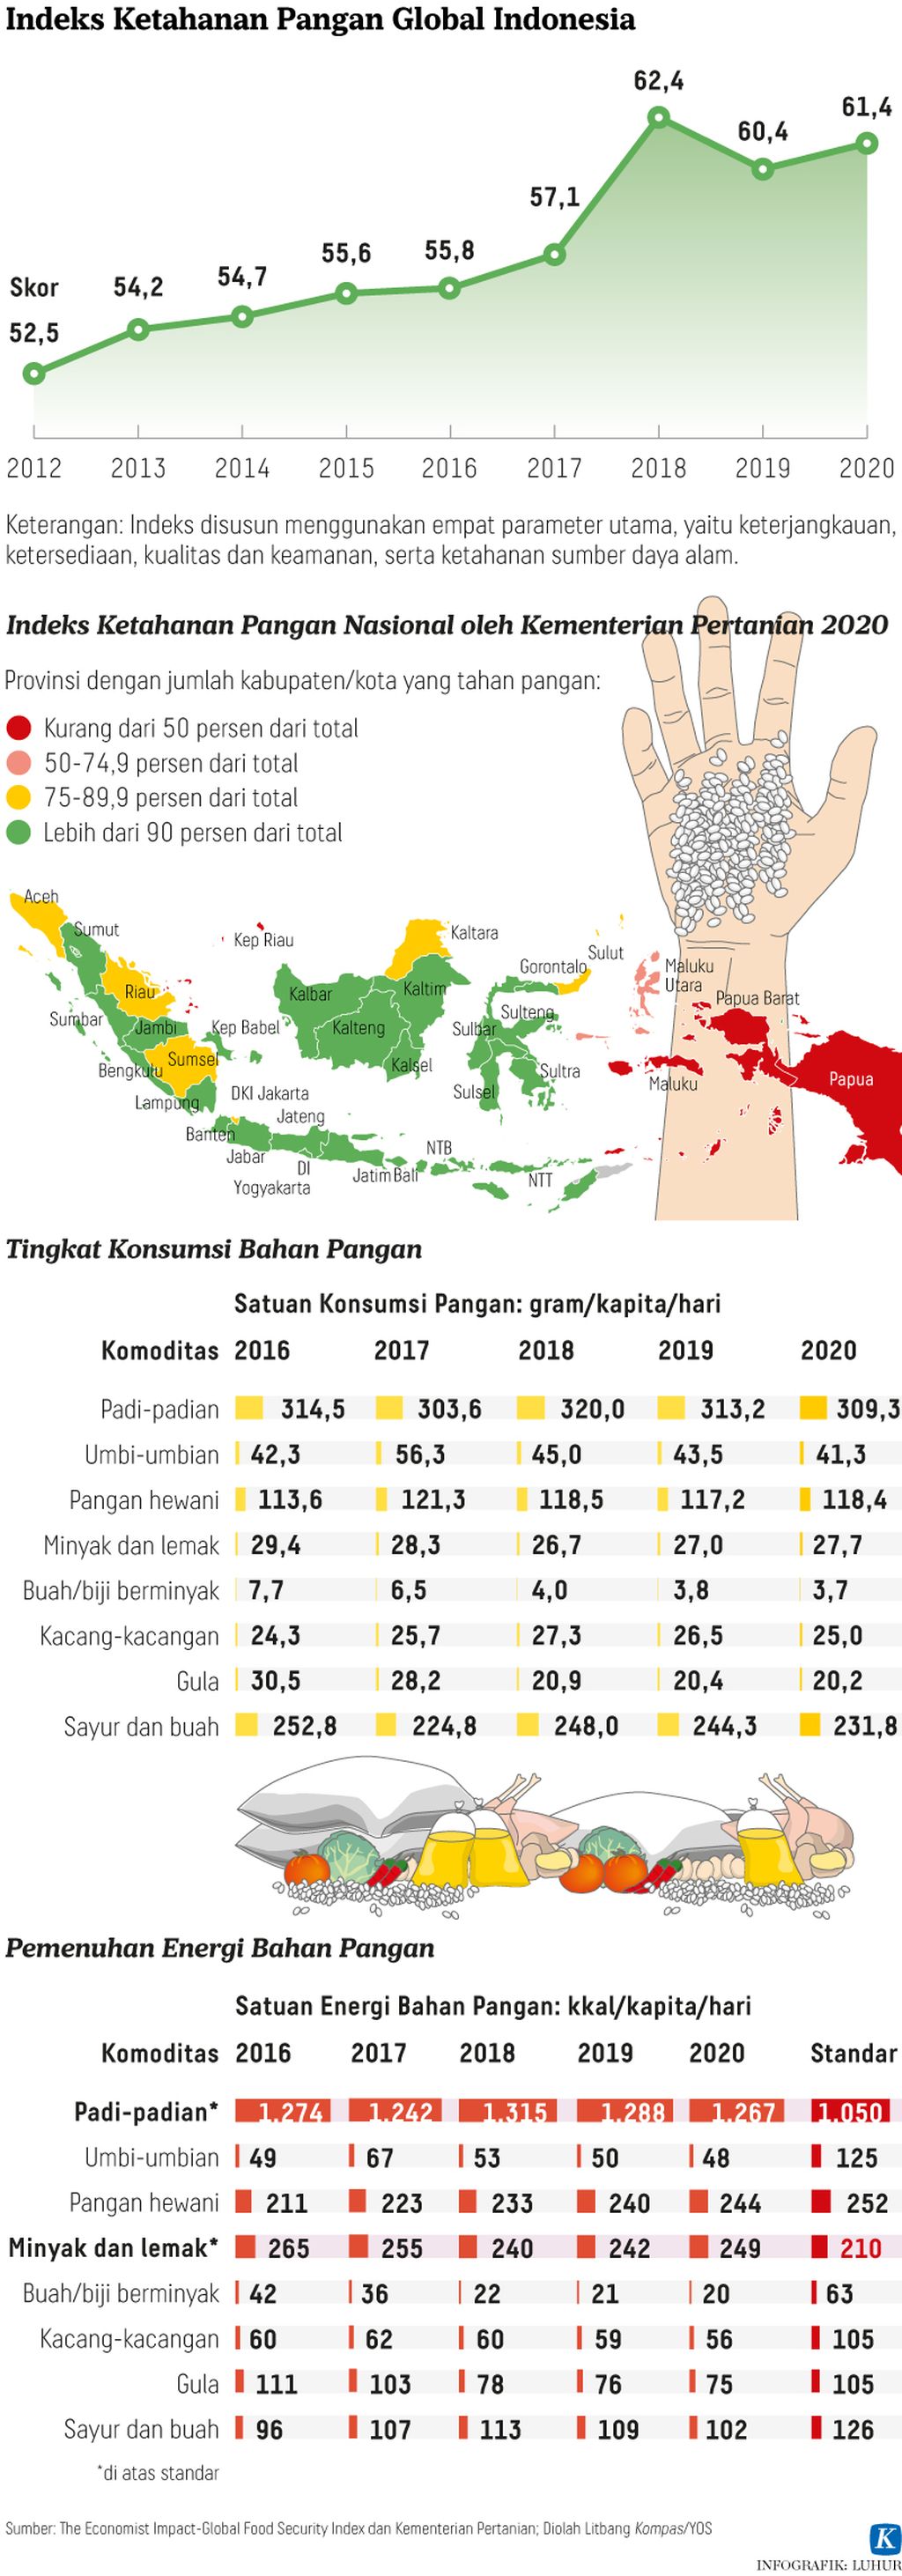 Indeks Ketahanan Pangan Indonesia menurun menjadi peringkat ke-69 pada 202. Sebelumnya, Indonesia ada di peringkat ke-62 (2019) dan ke-65 (2020). Adapun Indonesia ada di peringkat ke-113 untuk indikator sumber daya alam (SDA) dan daya tahan, sementara kualitas dan keamanan pangan di peringkat ke-95.